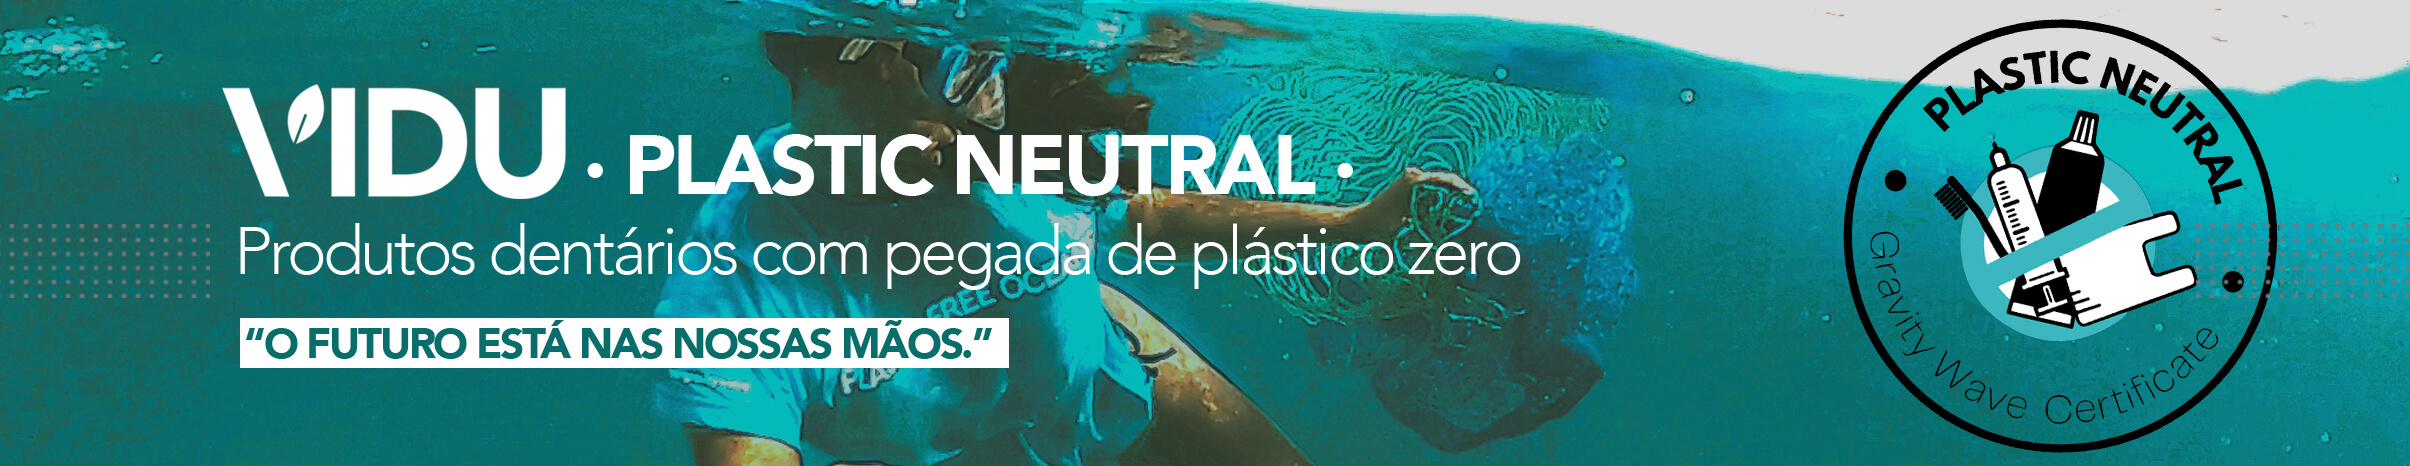 VIDU nueva marca plastic neutral de productos dentales ecológicos